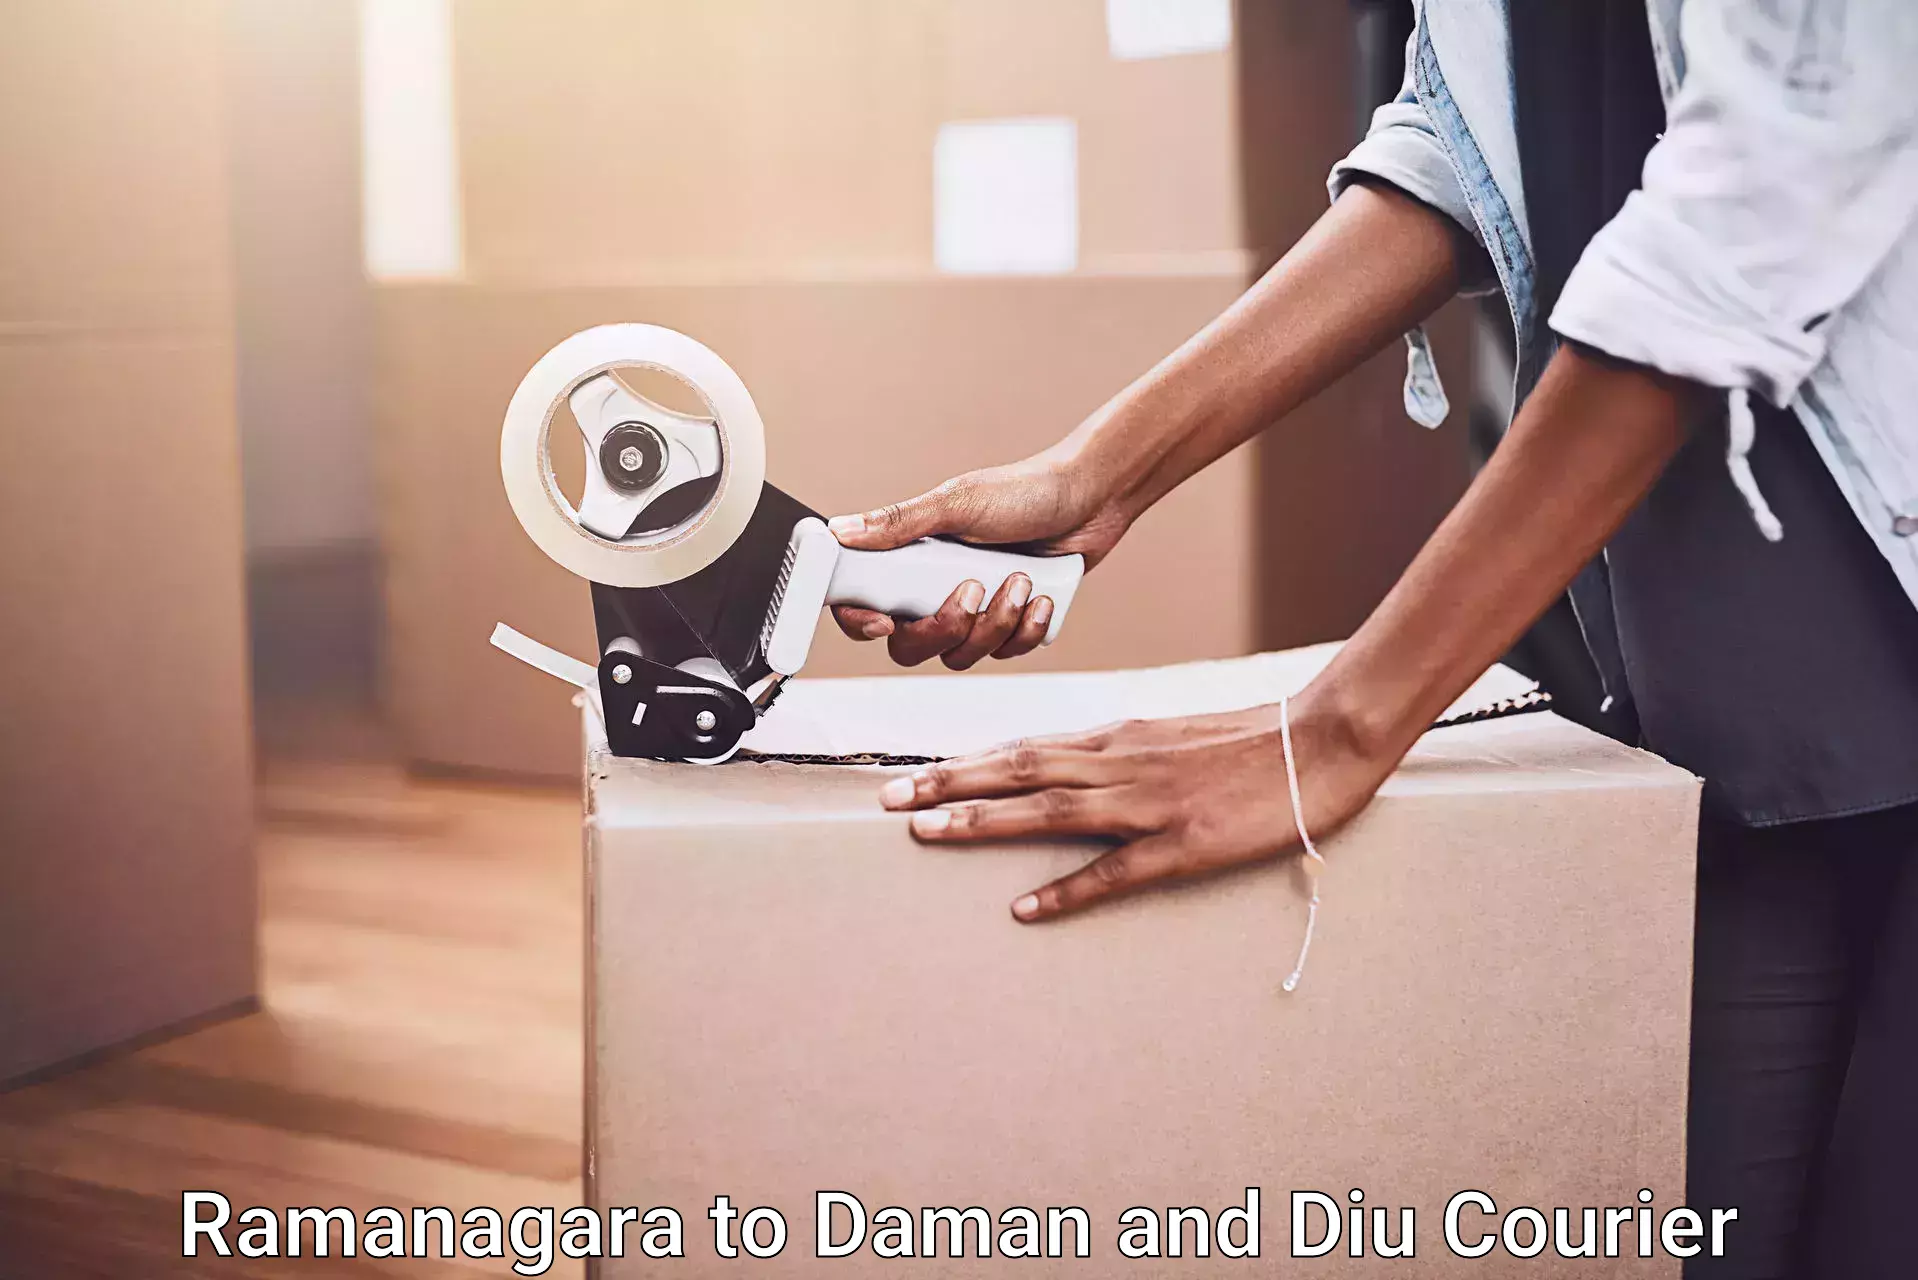 Customized moving experience Ramanagara to Diu